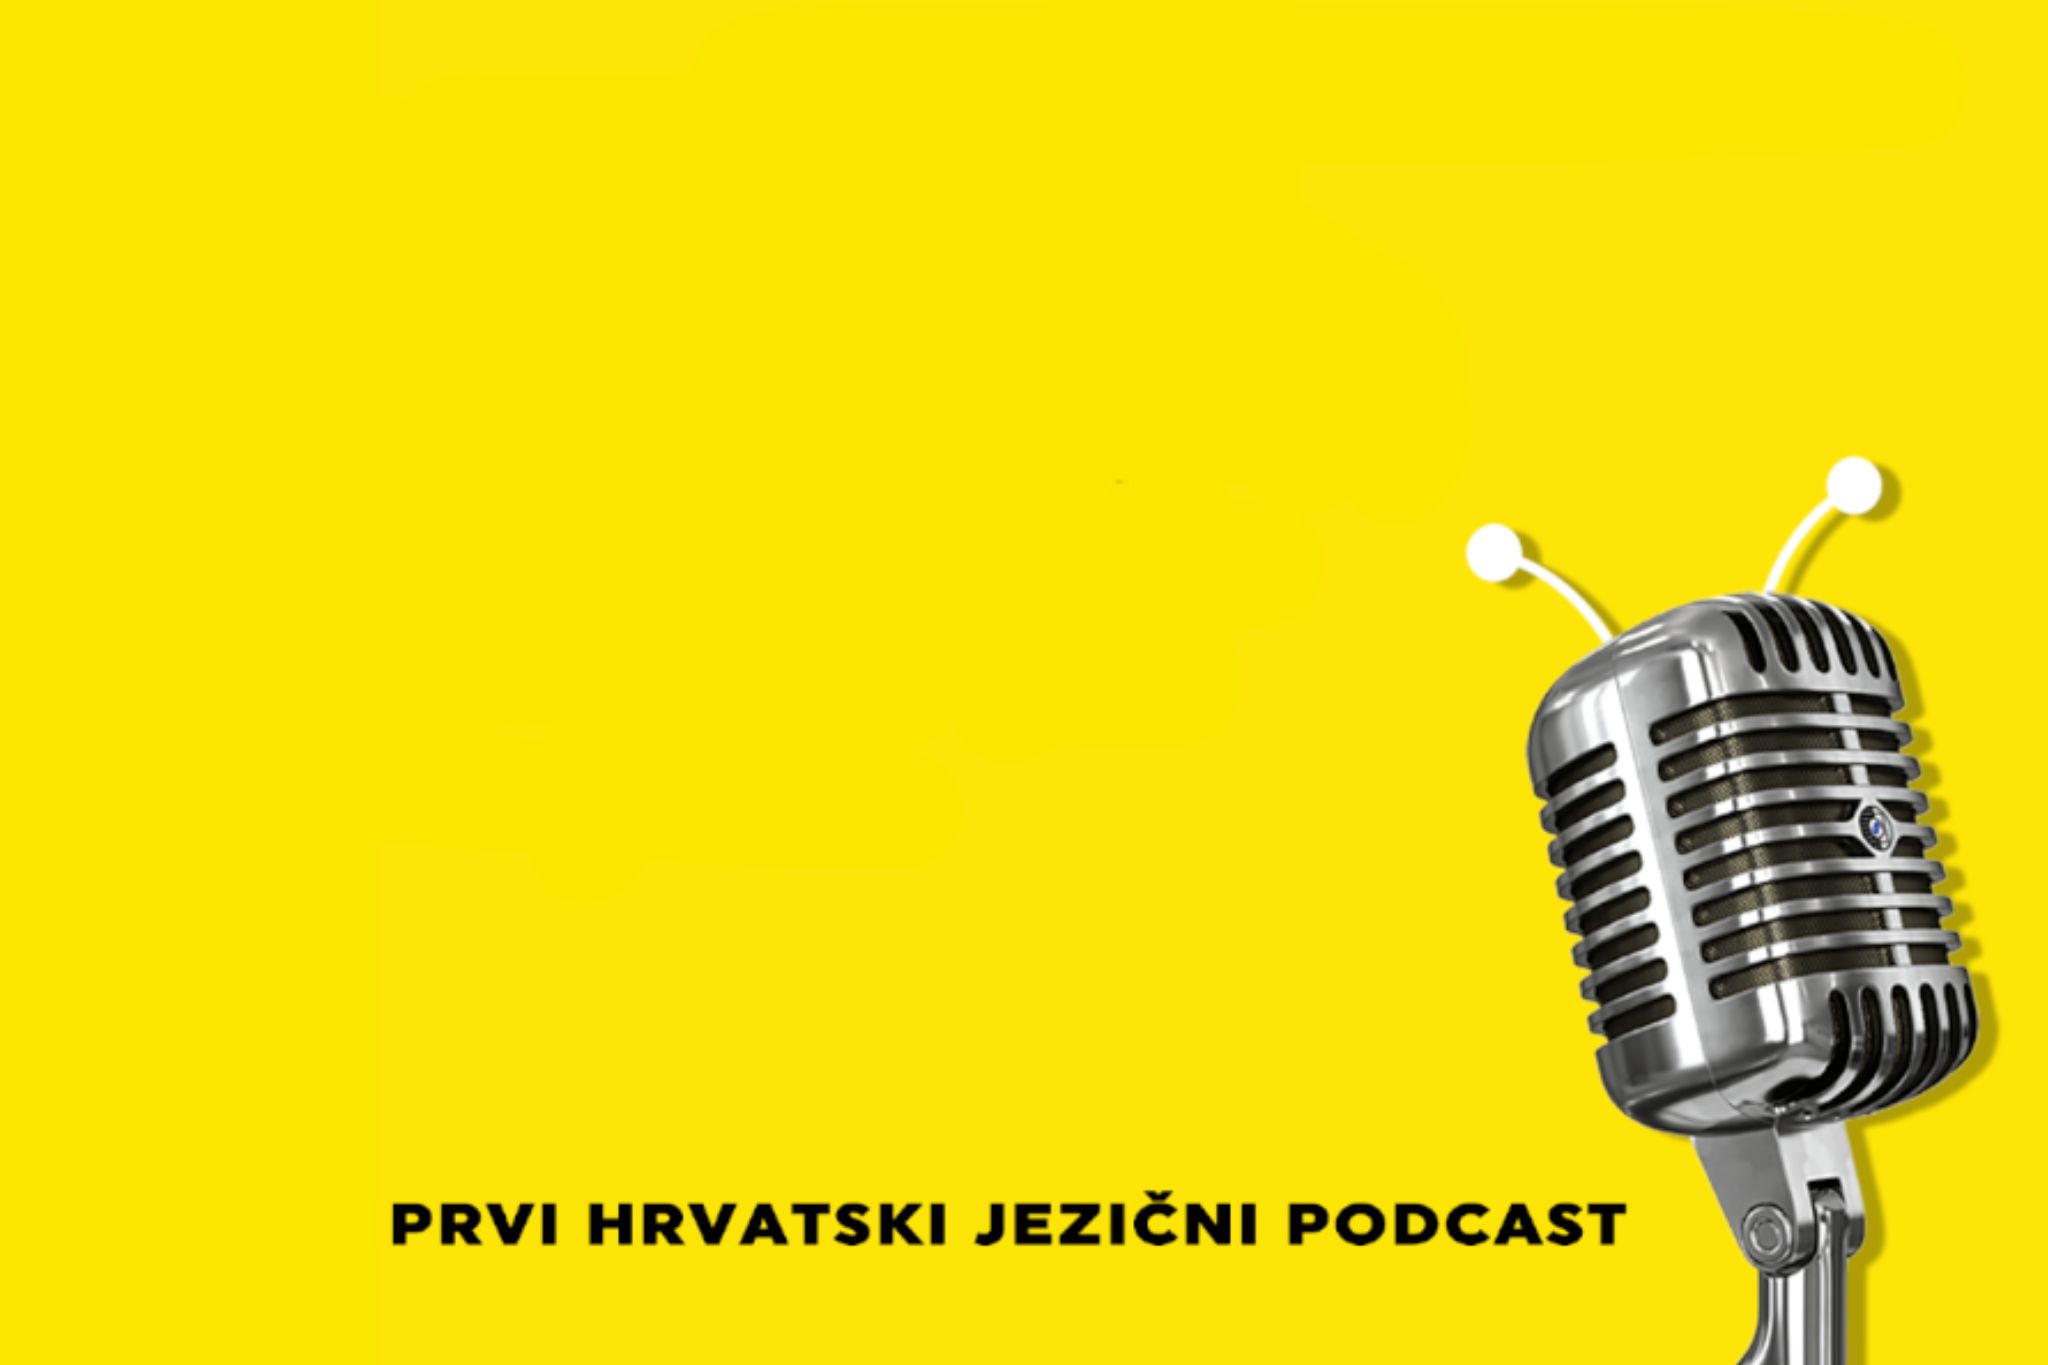 bliski susreti jezične vrste podcast